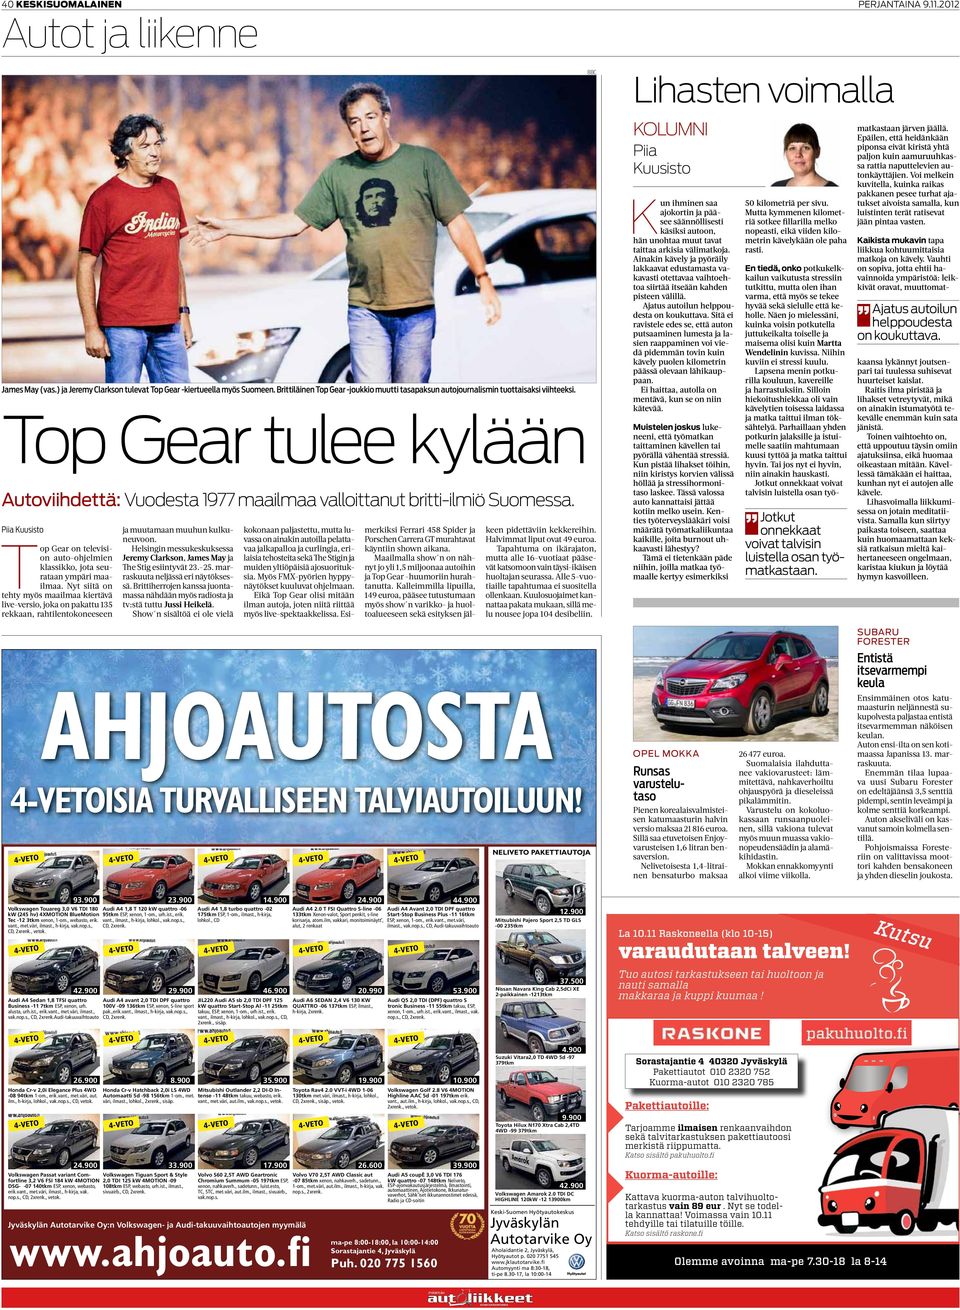 Piia Kuusisto Top Gear on television auto-ohjelmien klassikko, jota seurataan ympäri maailmaa.